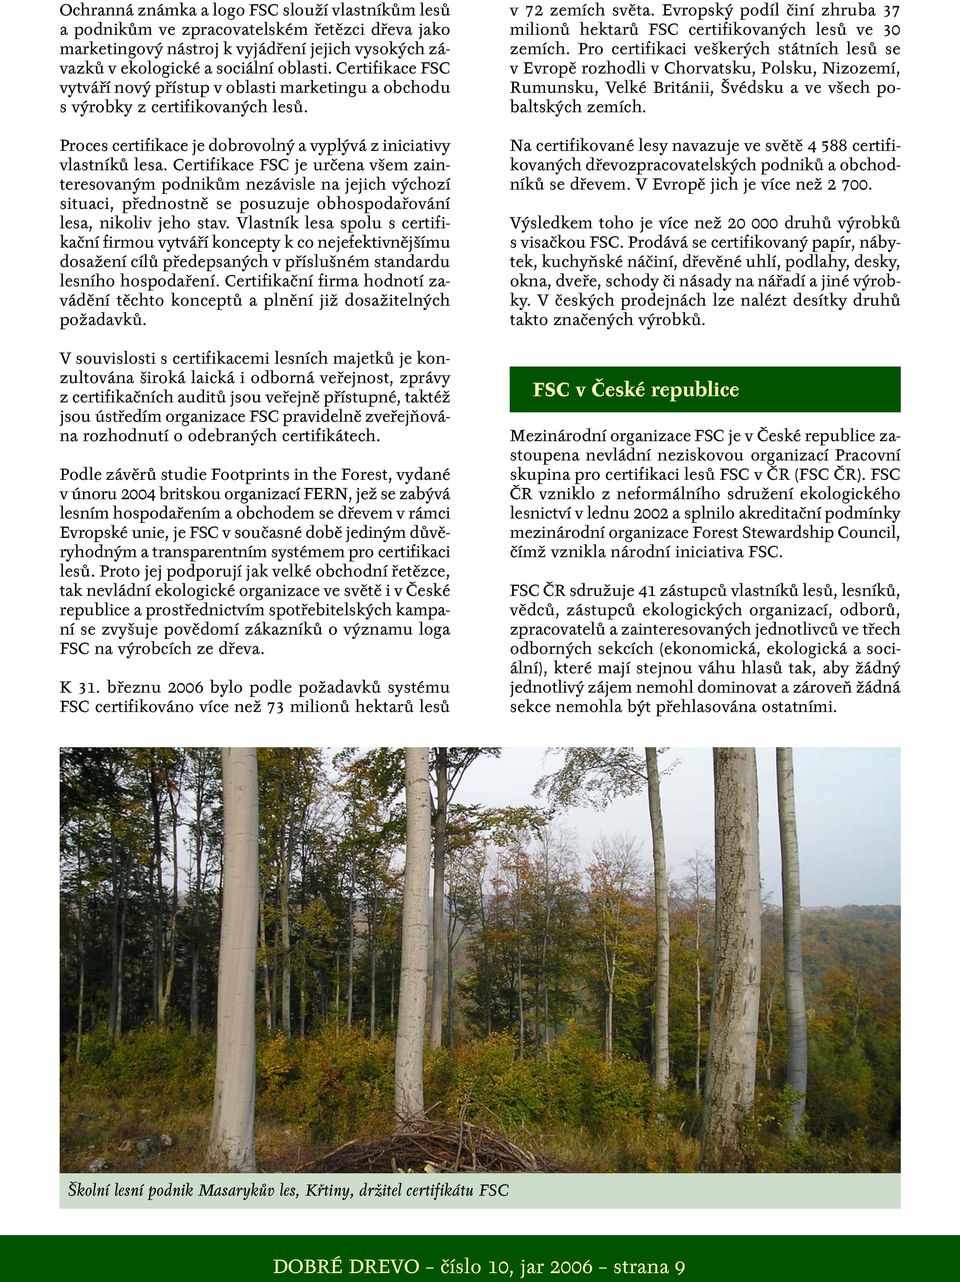 Certifikace FSC je určena všem zainteresovaným podnikům nezávisle na jejich výchozí situaci, přednostně se posuzuje obhospodařování lesa, nikoliv jeho stav.